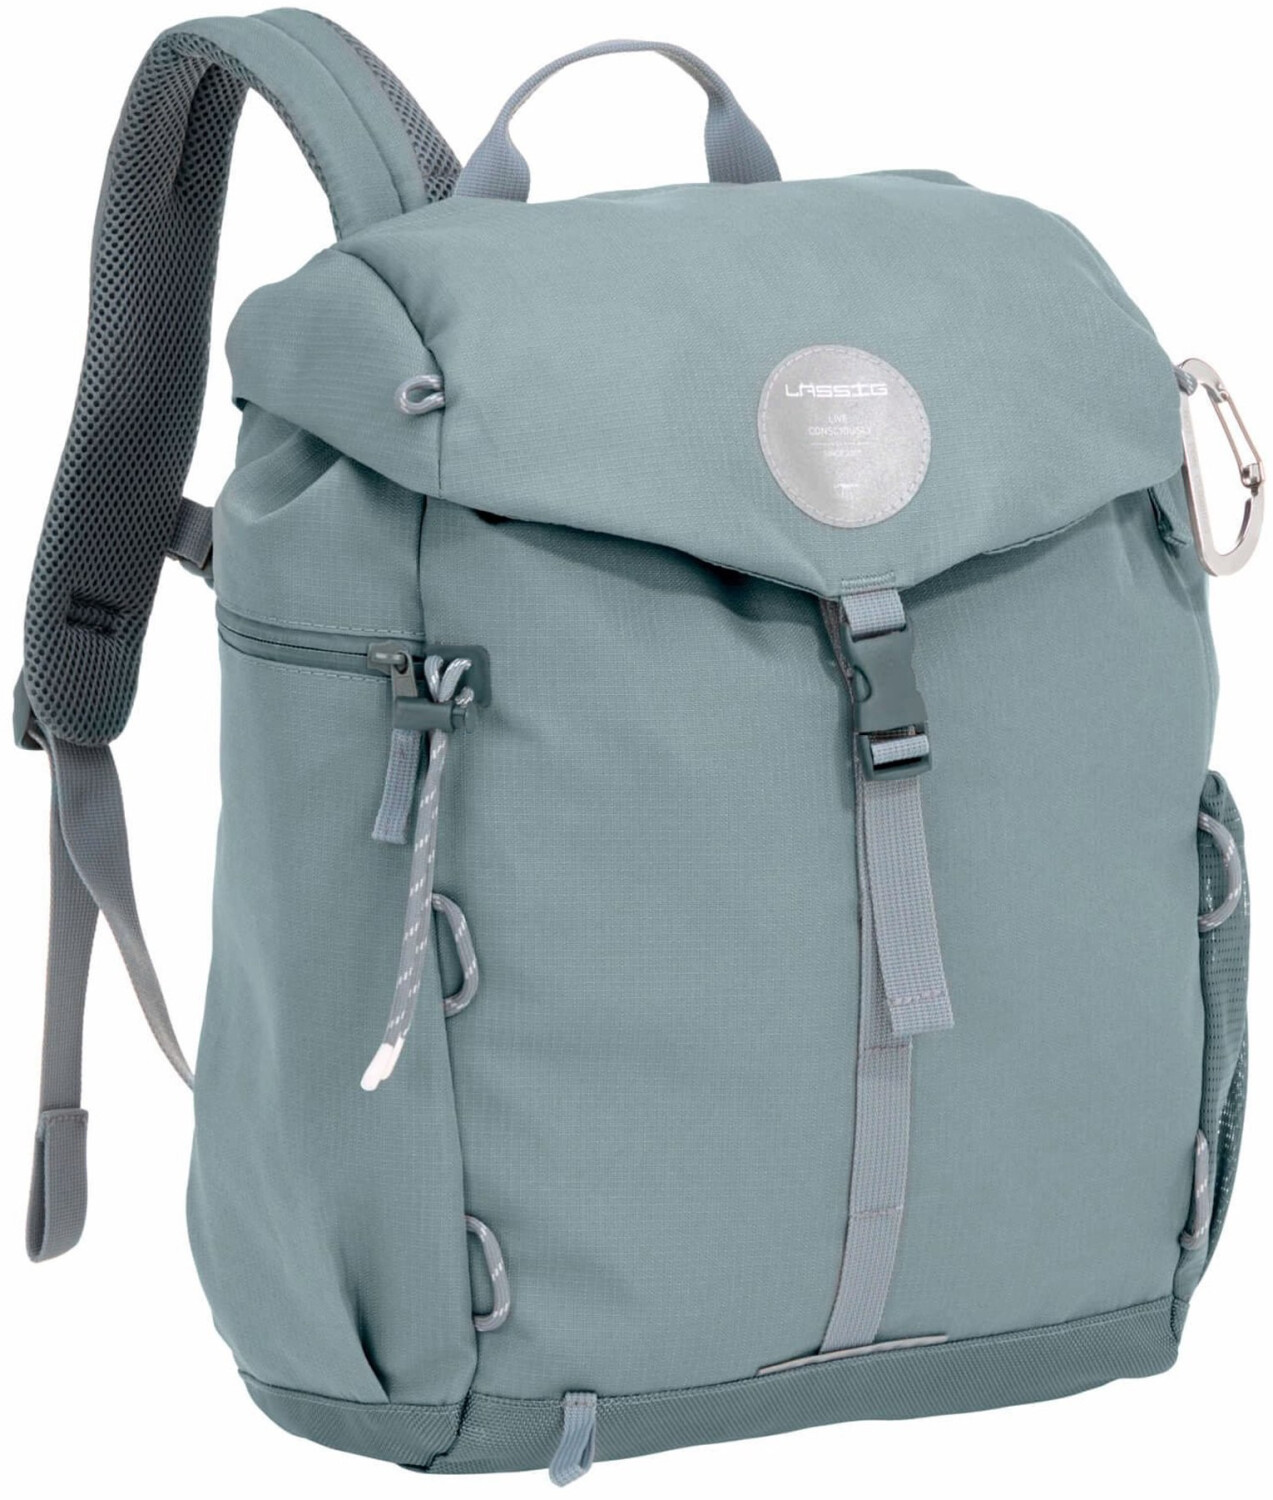 Lässig Green Label Outdoor Backpack ab € 76,99 | Preisvergleich bei